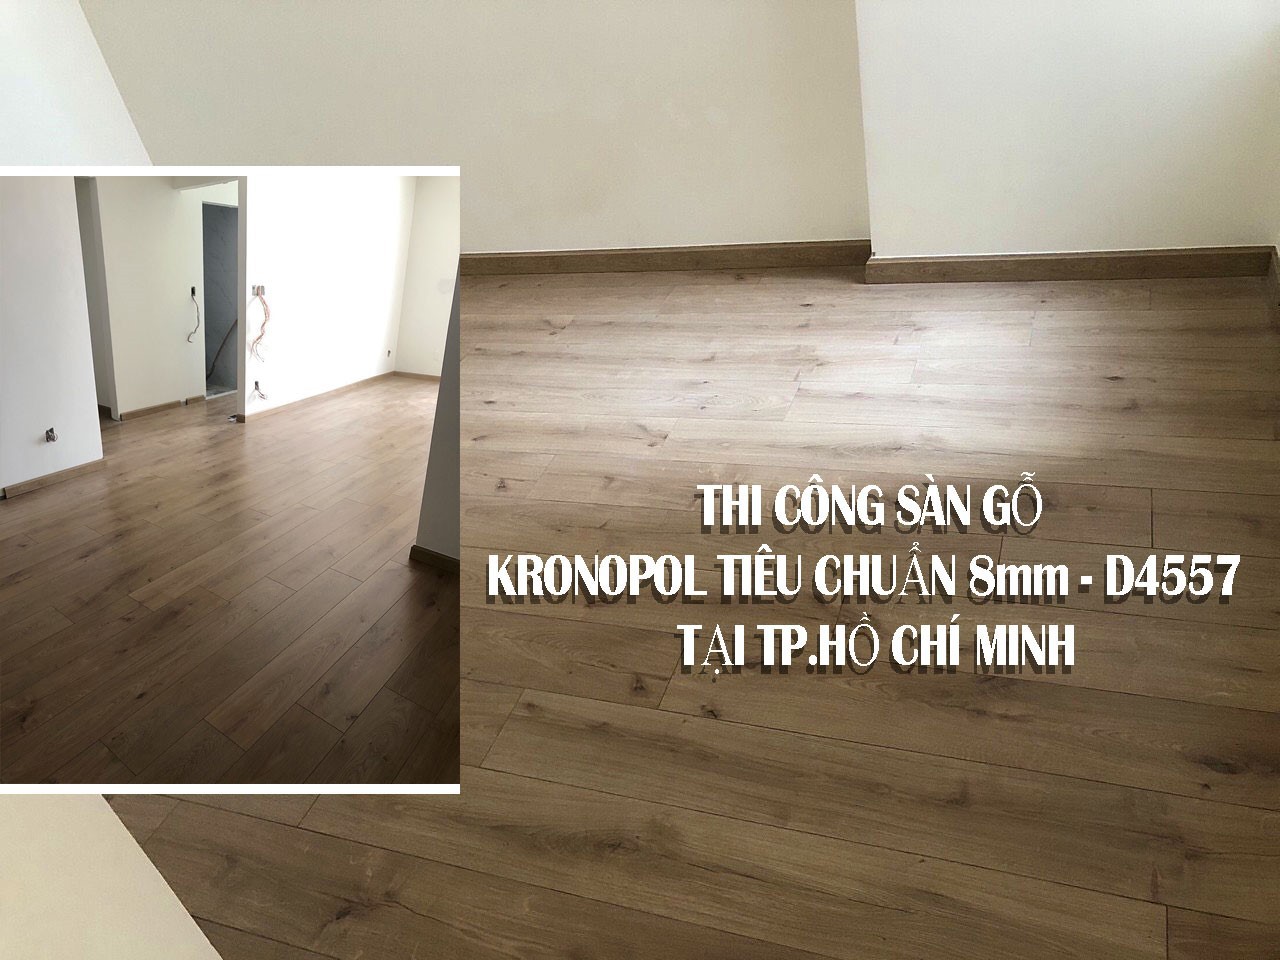 Thi công sàn gỗ Kronopol tiêu chuẩn 8mm – D4557 tại TP. Hồ Chí Minh